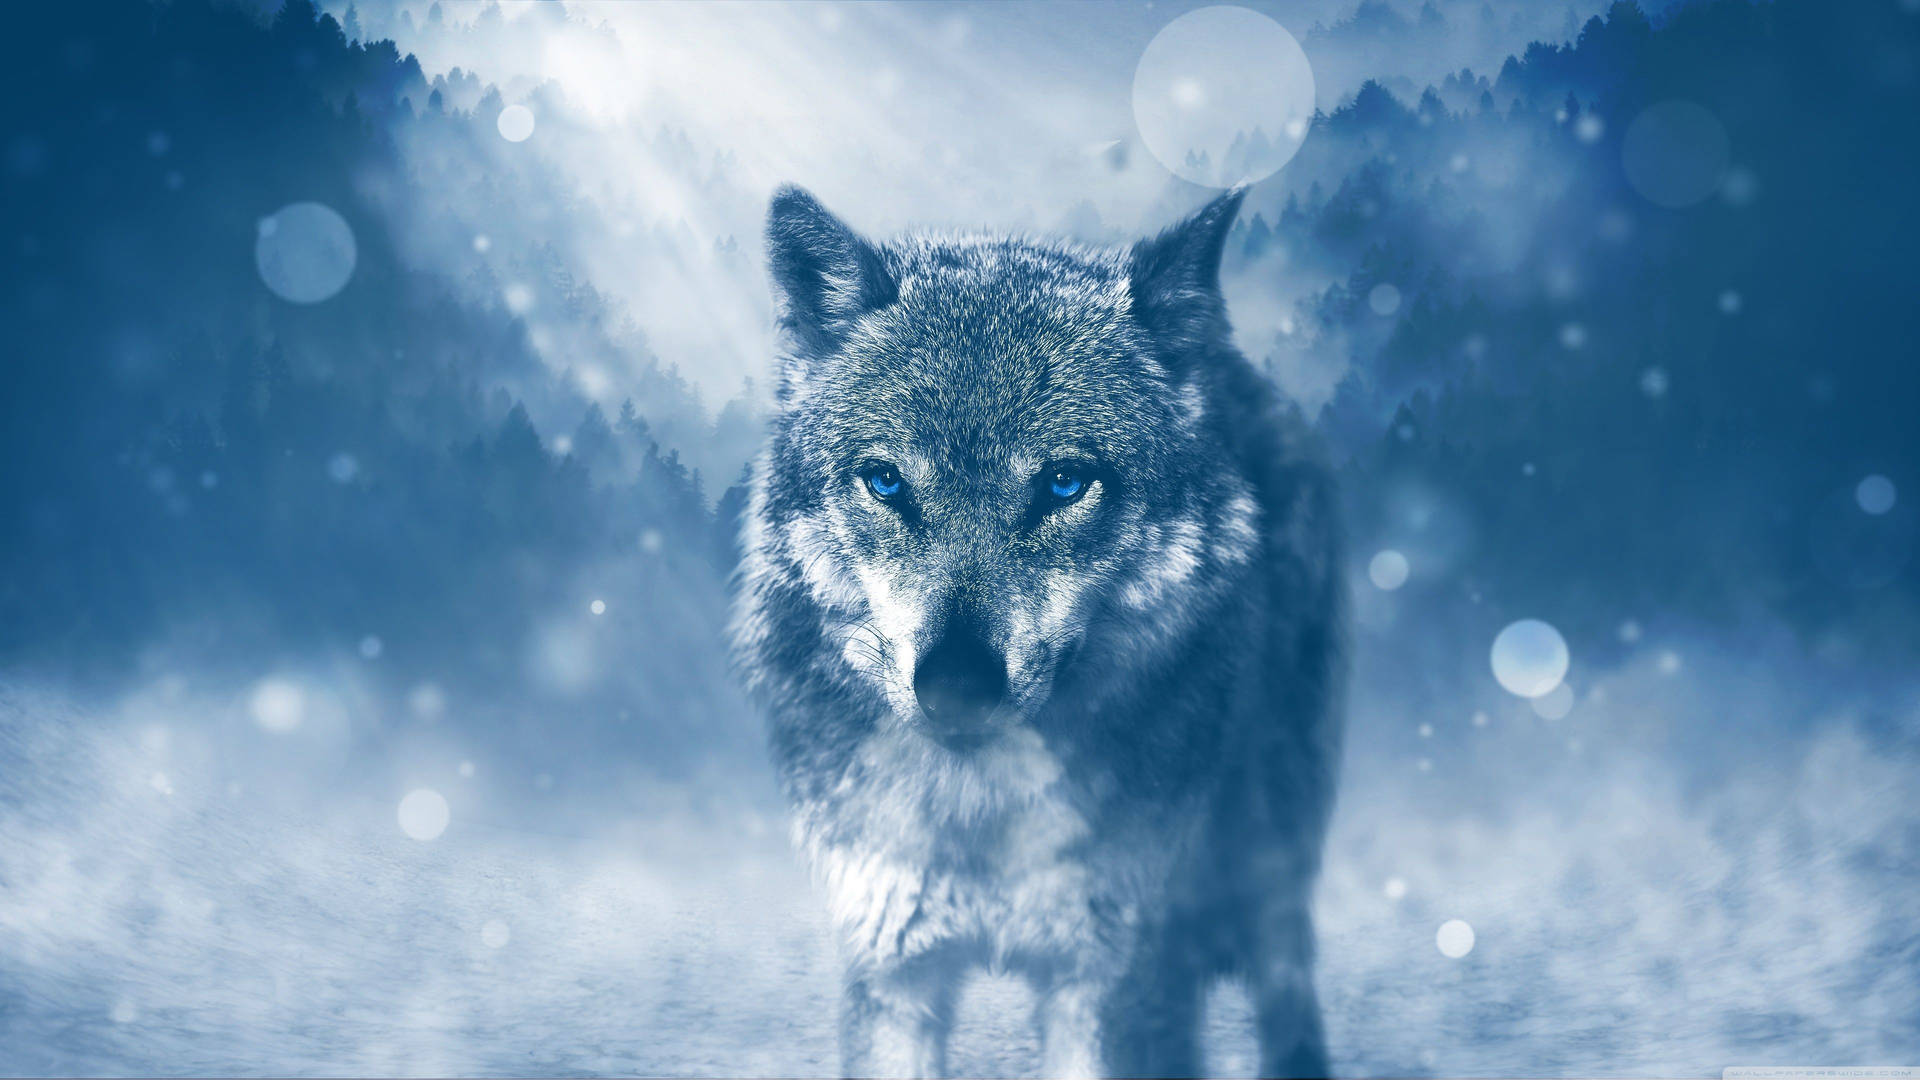 Wolf Winter 4k Ultra Hd